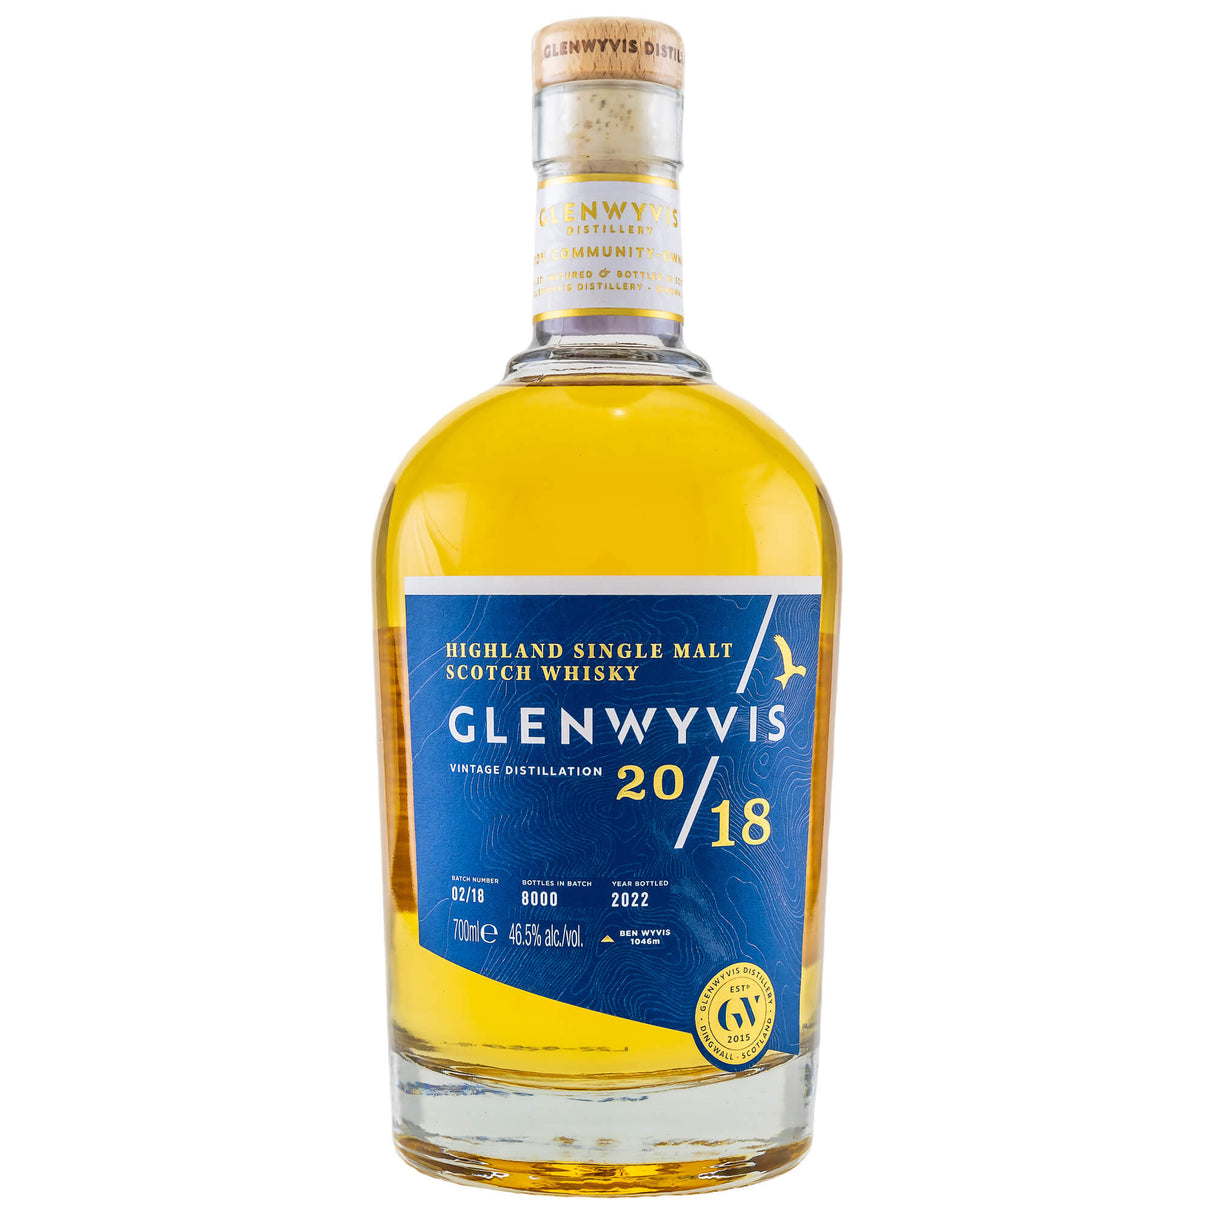 GlenWyvis batch 2 single malt scotch whisky